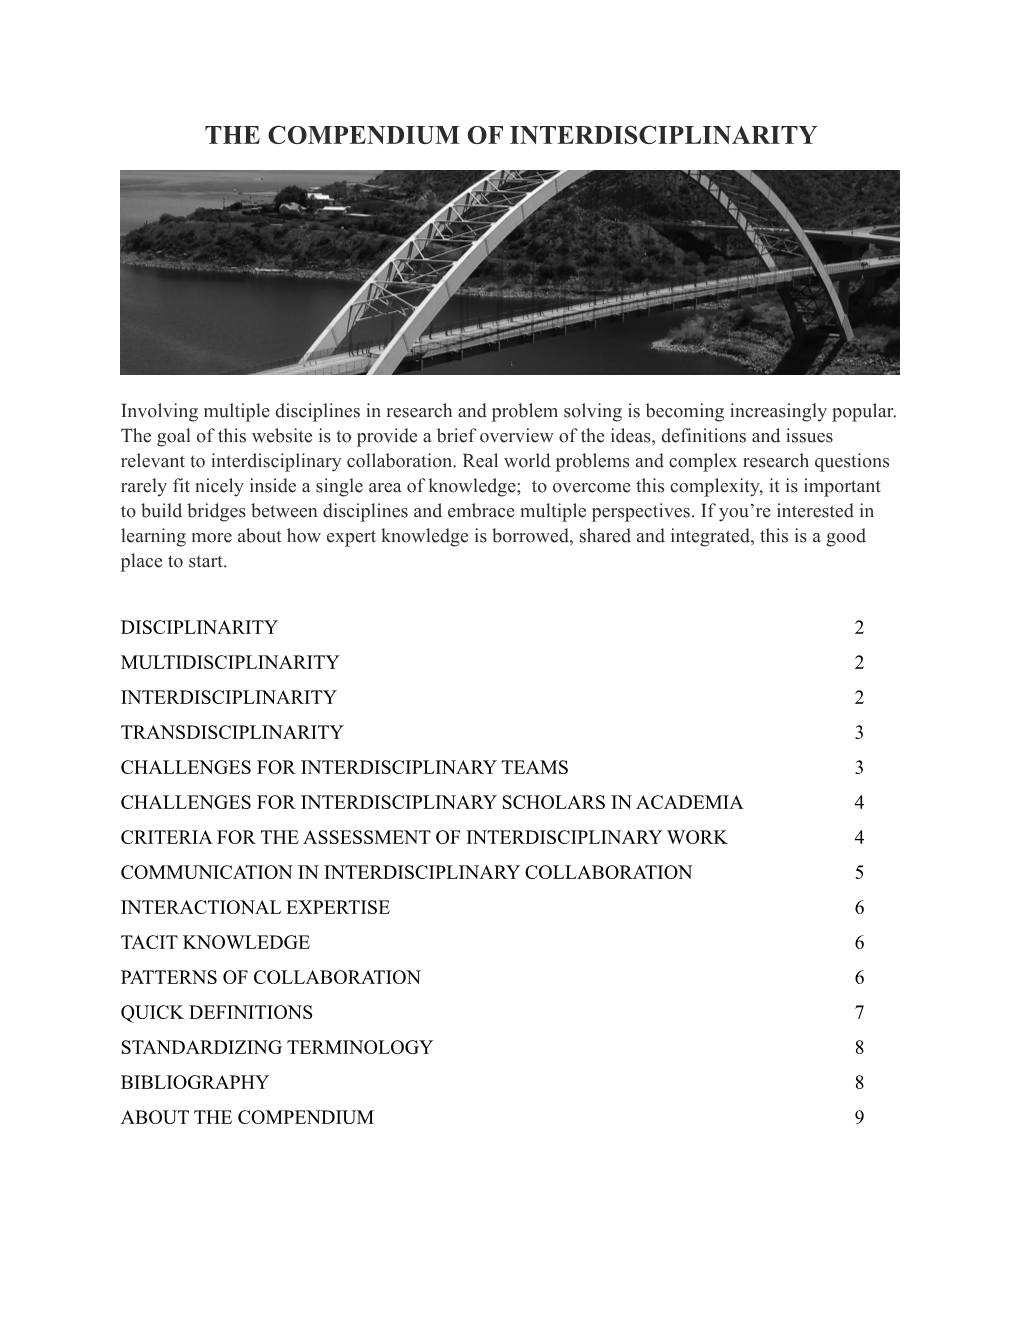 The Compendium of Interdisciplinarity (2014)